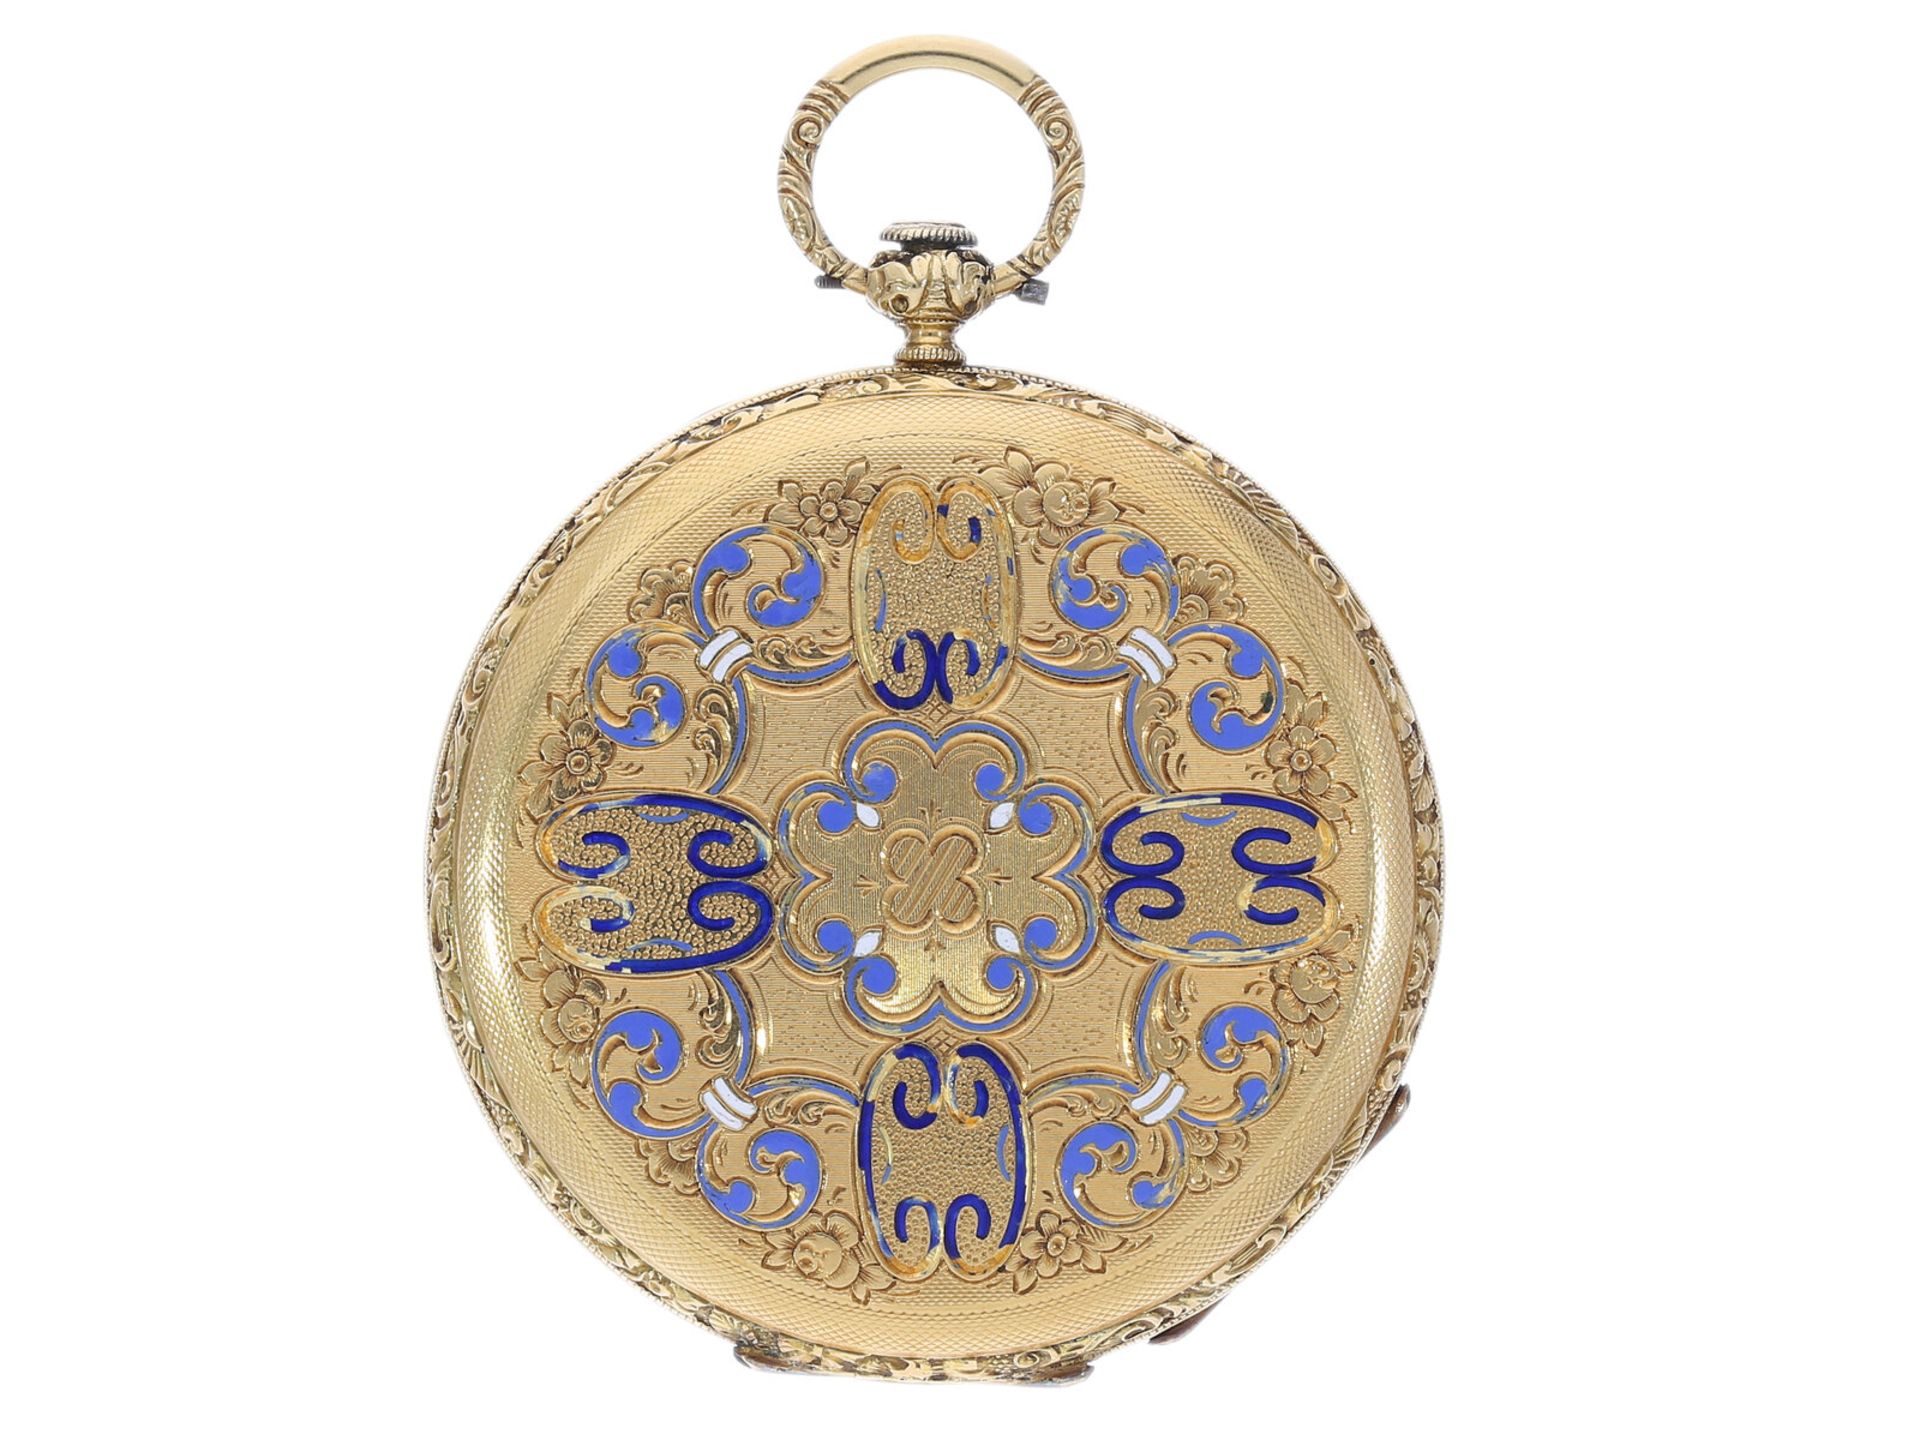 Goldene Taschenuhr sehr feiner Qualität, Sandoz & Fils No.54075, ca. 1840